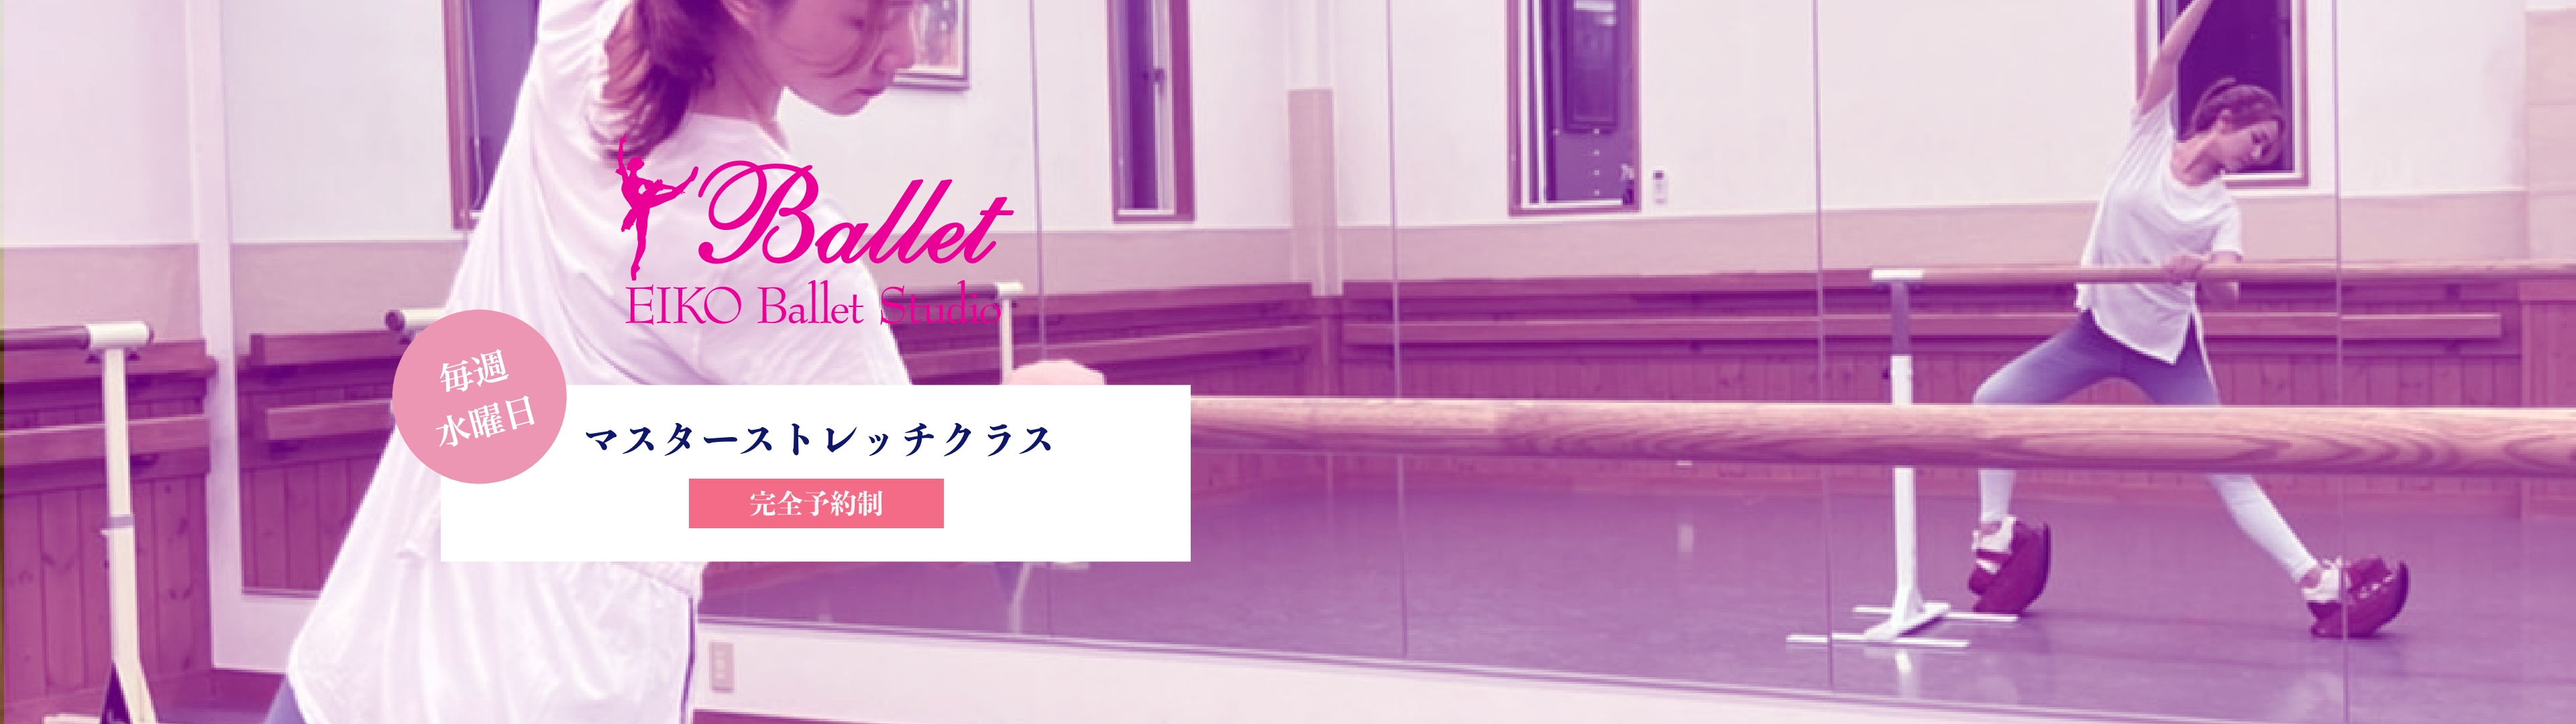 EIKO Ballet Studio｜毎週水曜日｜マスターストレッチクラス｜完全予約制